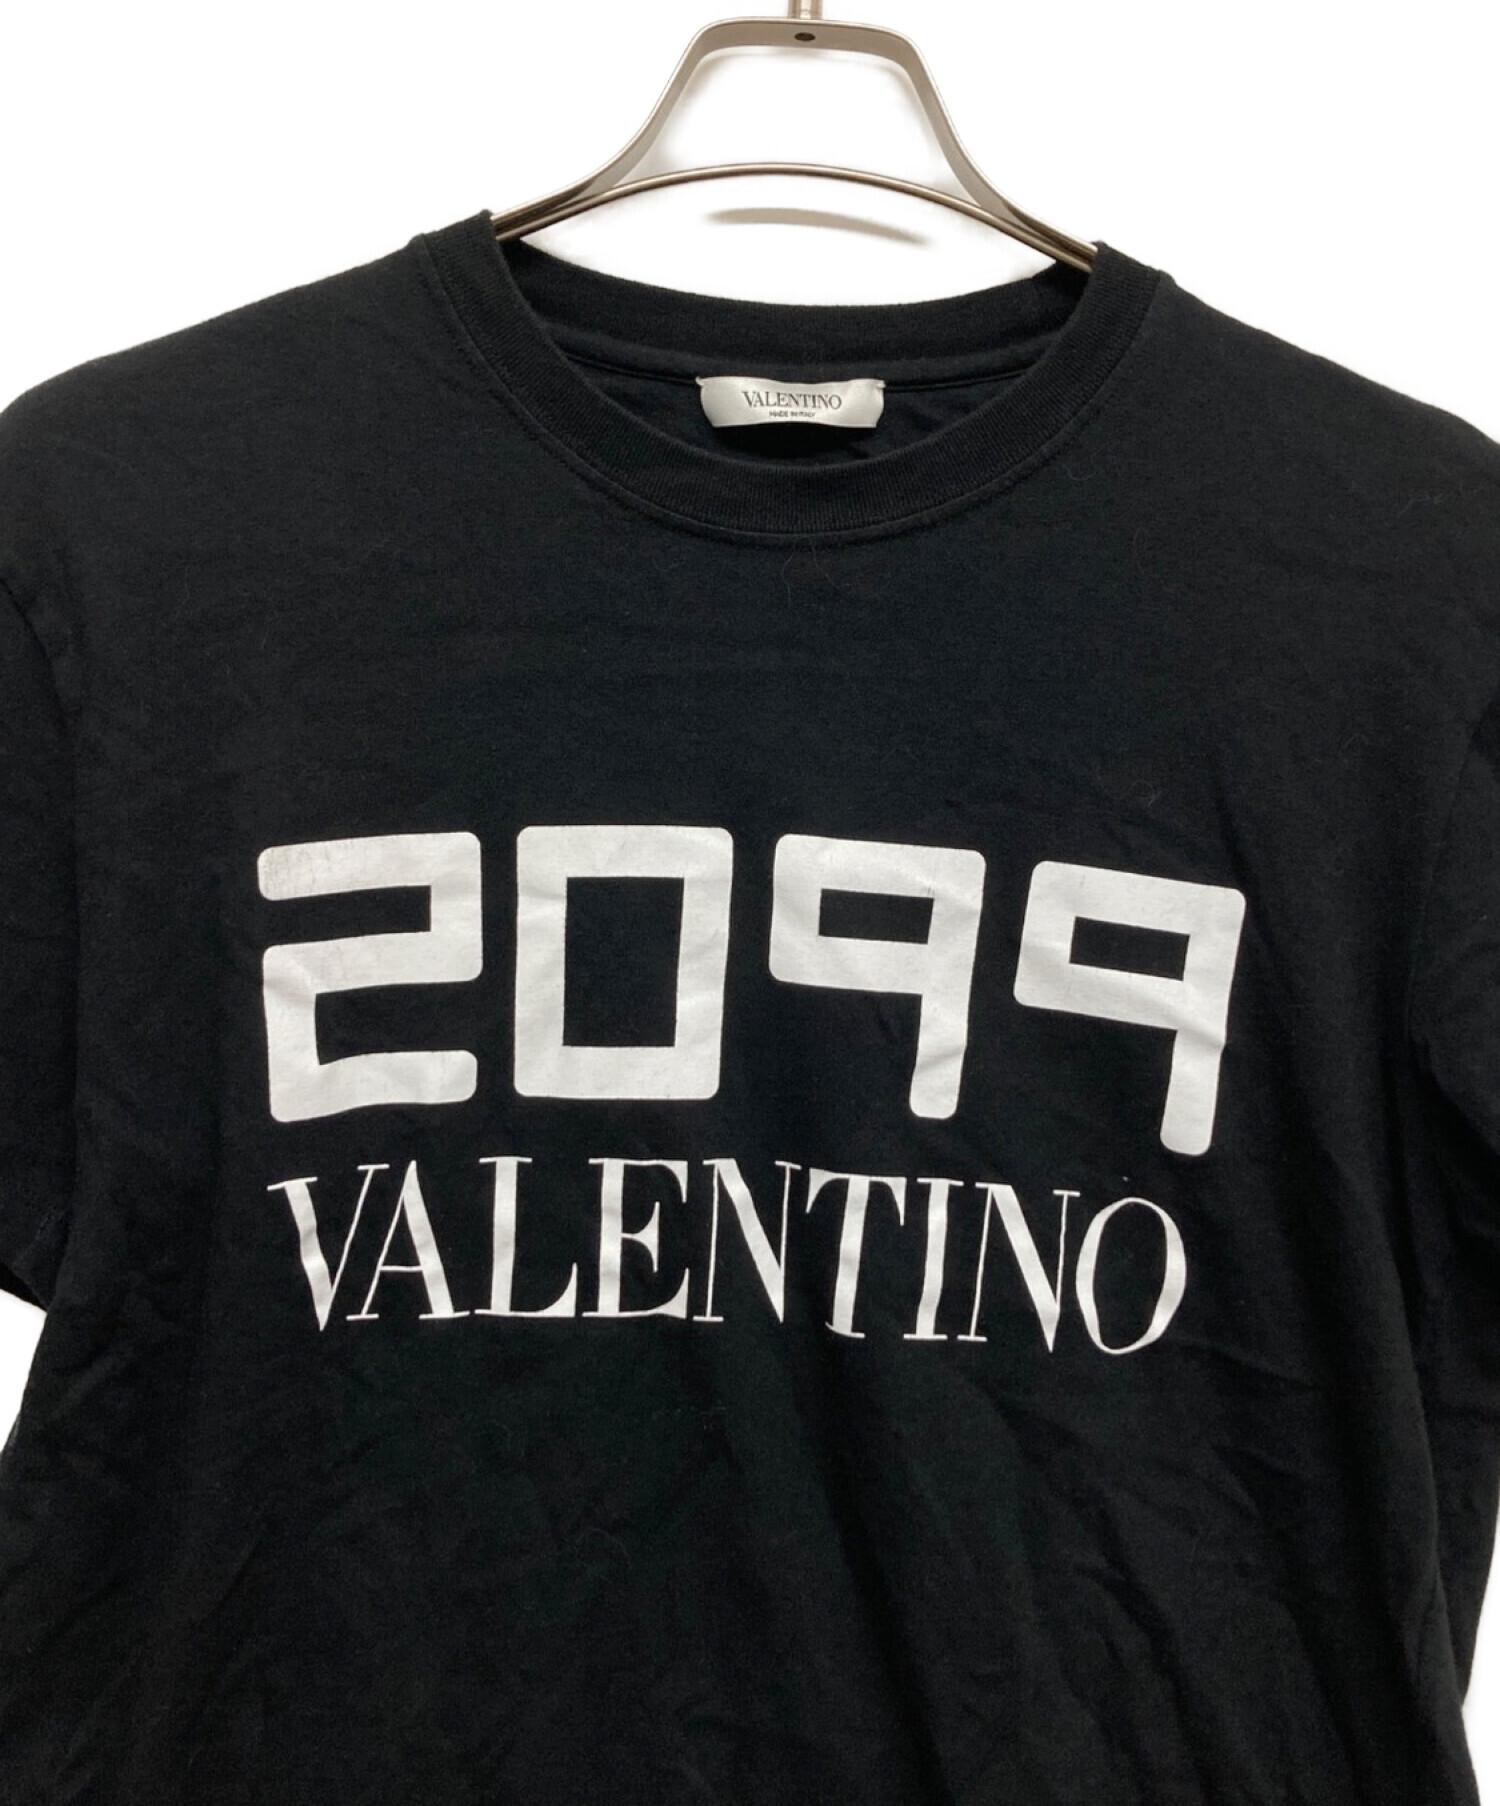 中古・古着通販】VALENTINO (ヴァレンティノ) 2099ロゴTシャツ